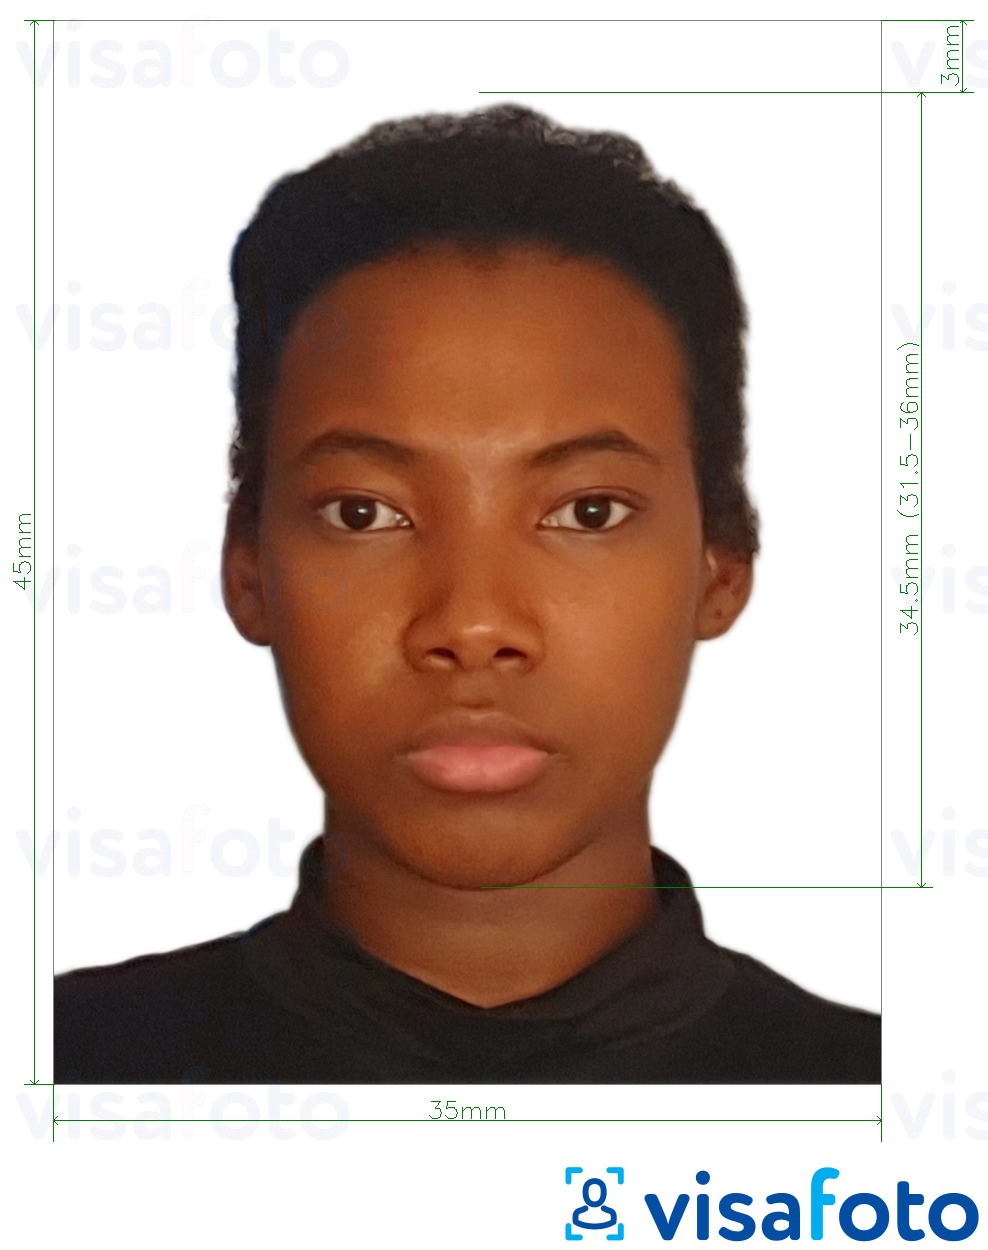 نمونه ی یک عکس برای پاسپورت کامرون 35x45 میلی متر (3.5x4.5 سانتی متر) با مشخصات دقیق